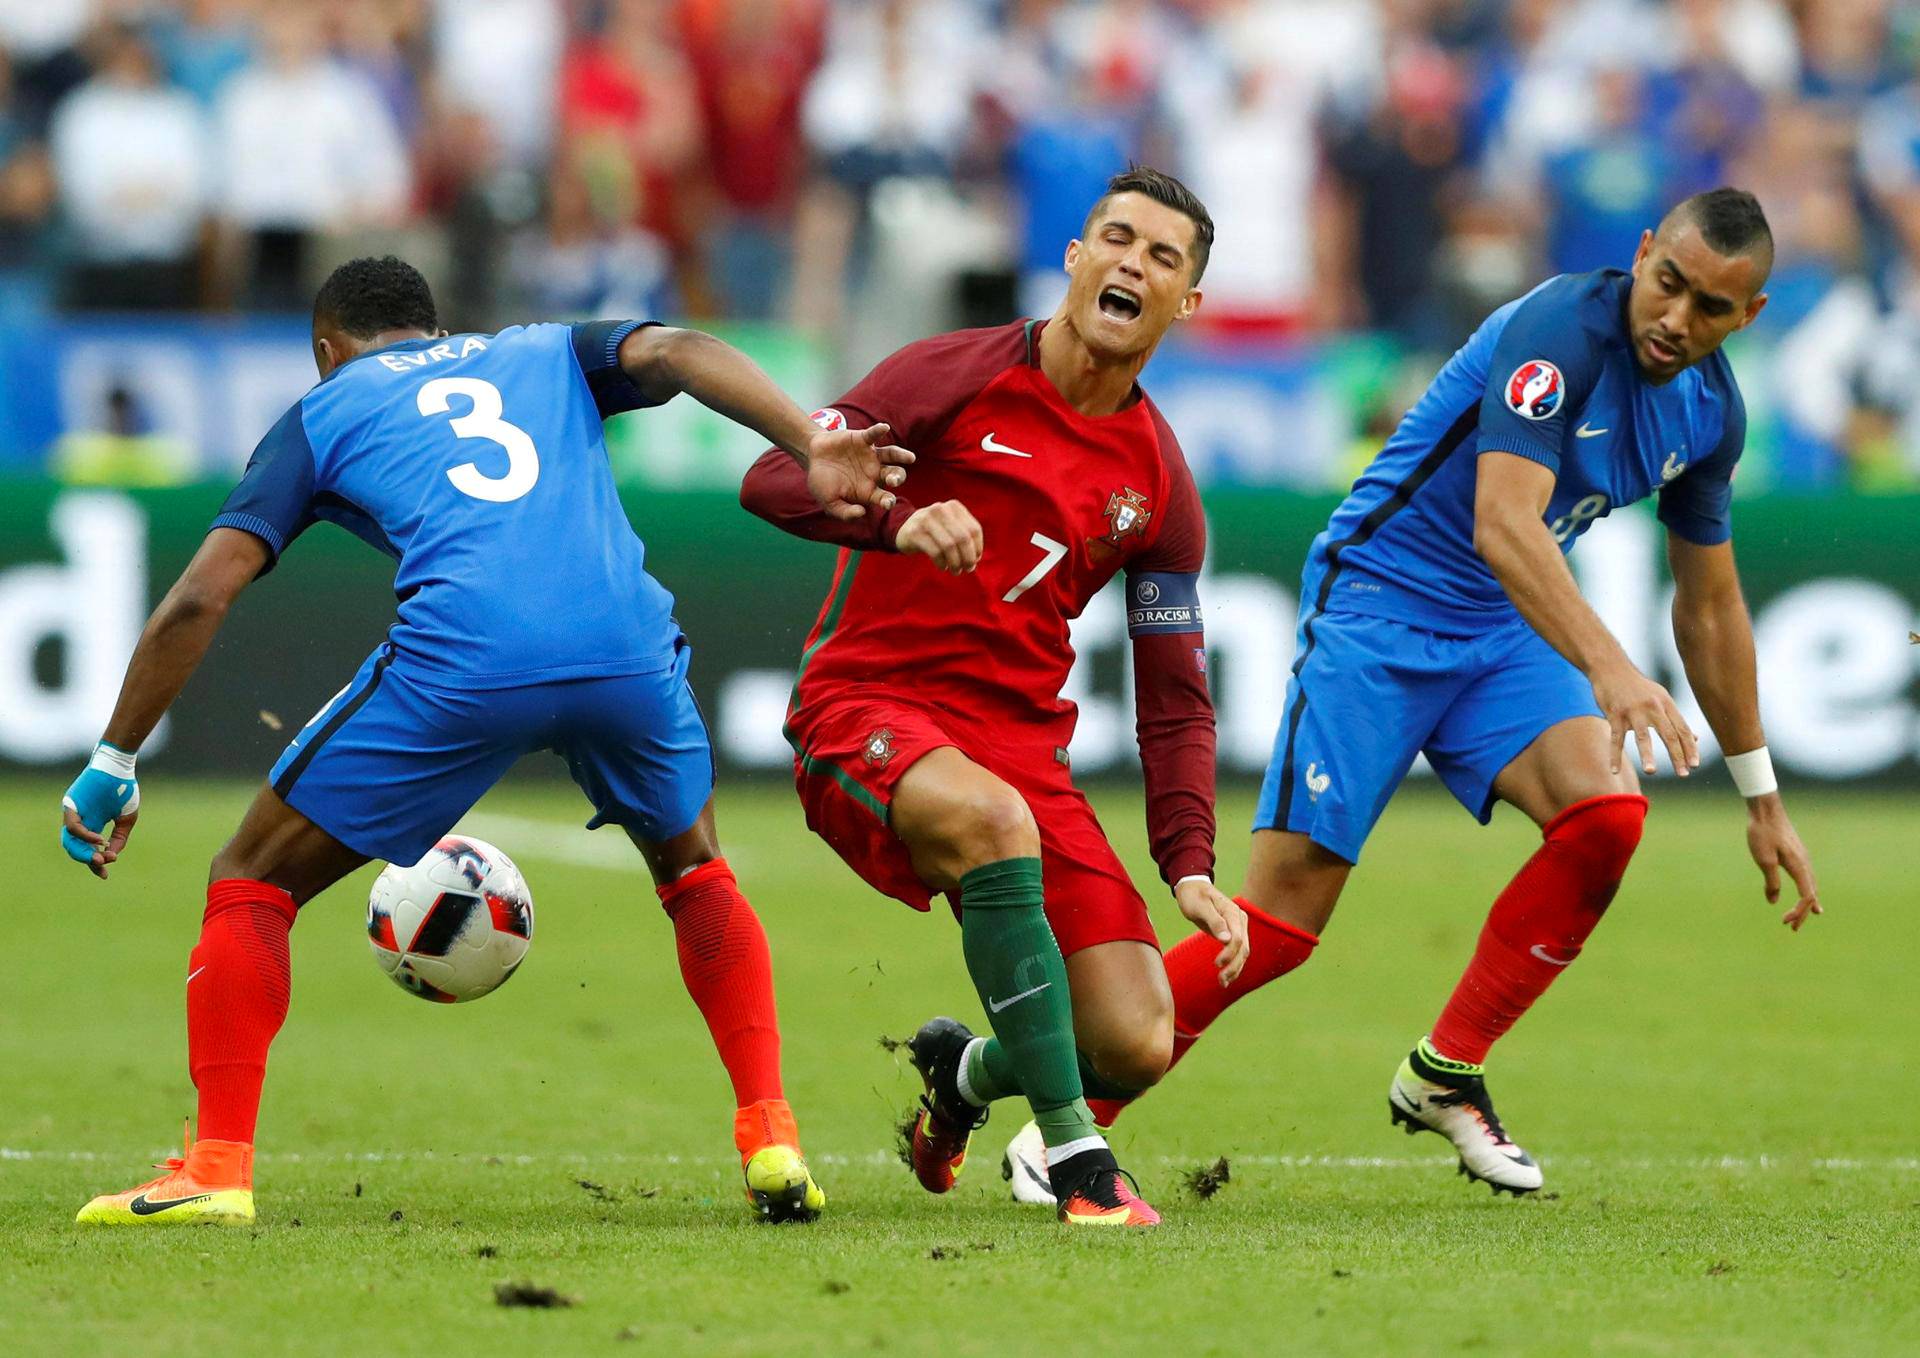 Cristiano Ronaldon EM-finaali sai karmean alun, kun Dimitri Payet taklasi häntä pallontavoittelutilanteessa. Ronaldon polvi vääntyi pahasti ja nivelsiteet vaurioituivat.